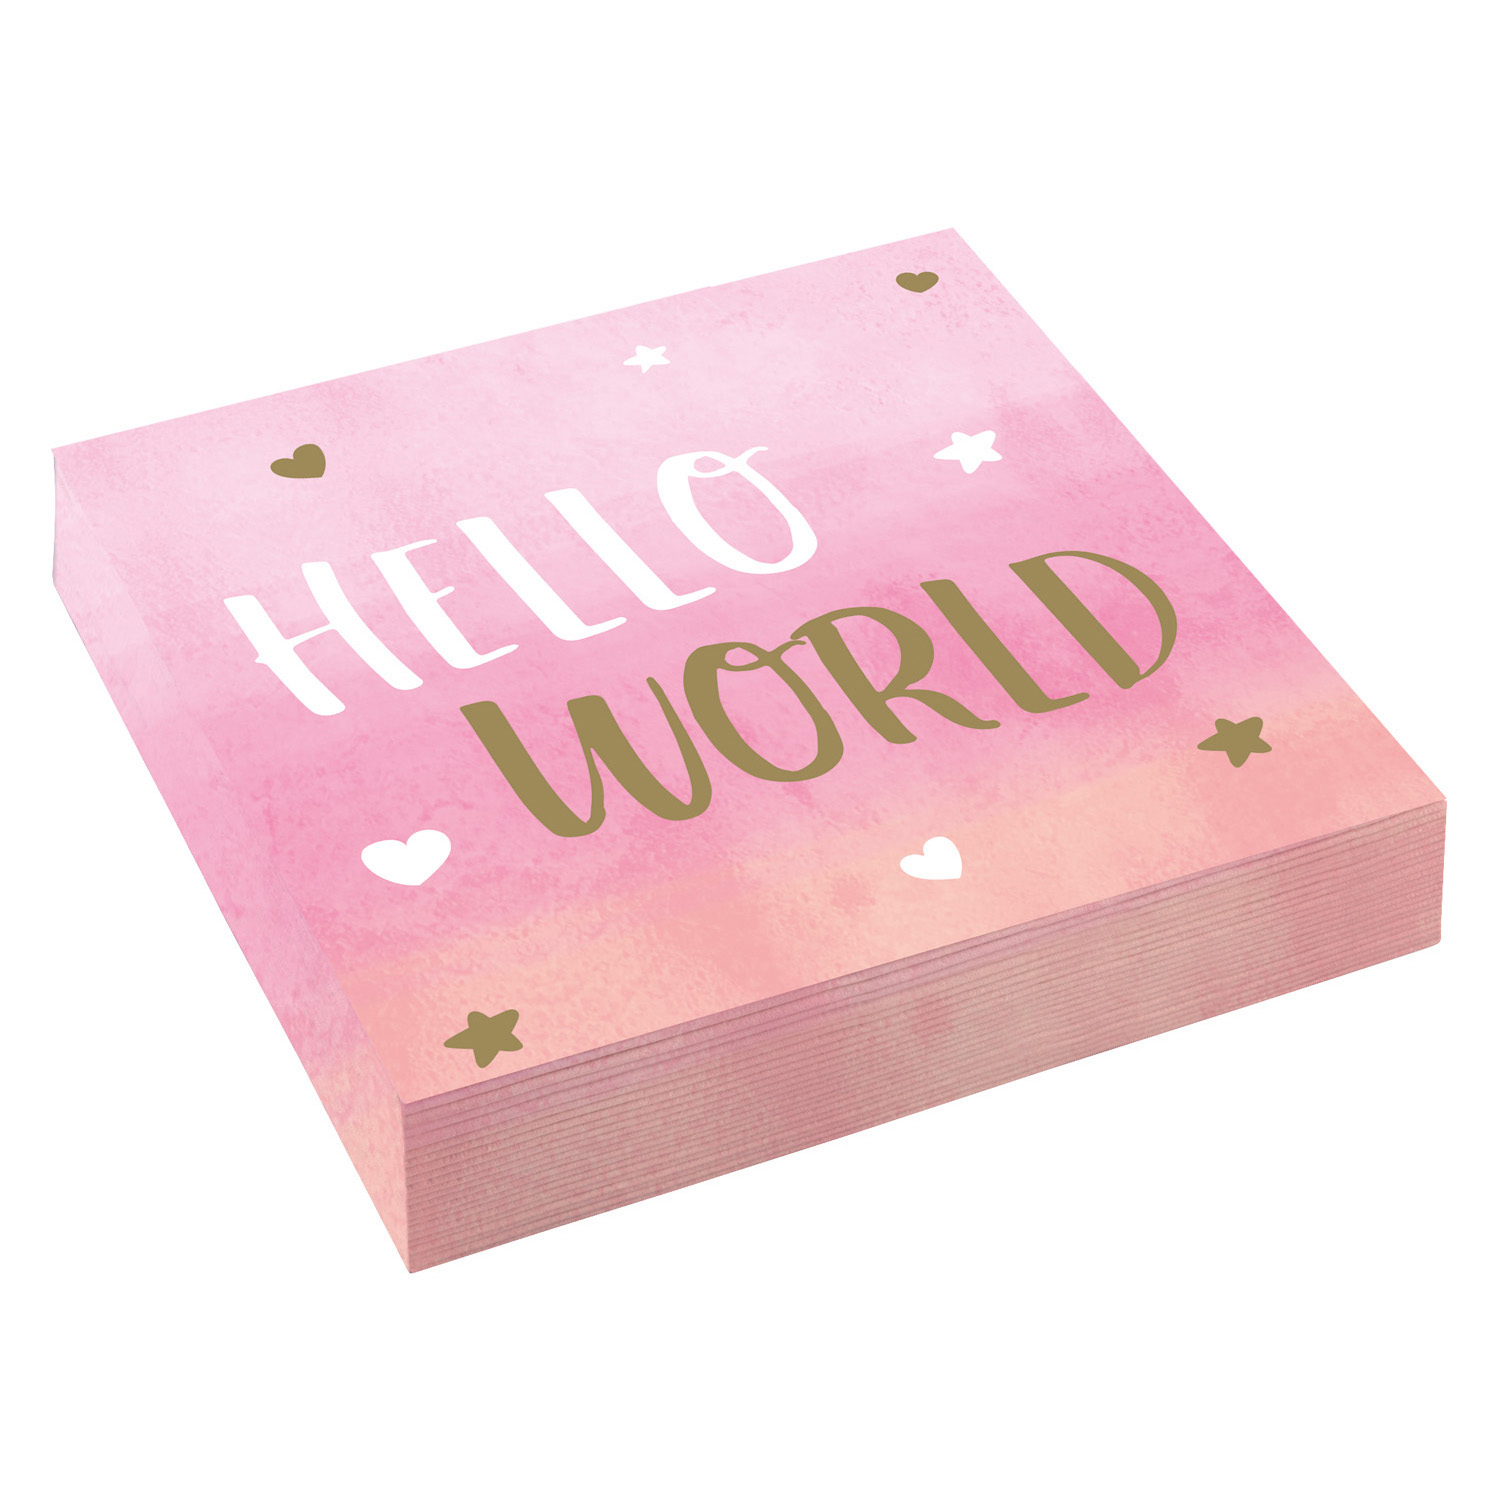 Amscan Servítky Hello World - ružové 33 x 33 cm